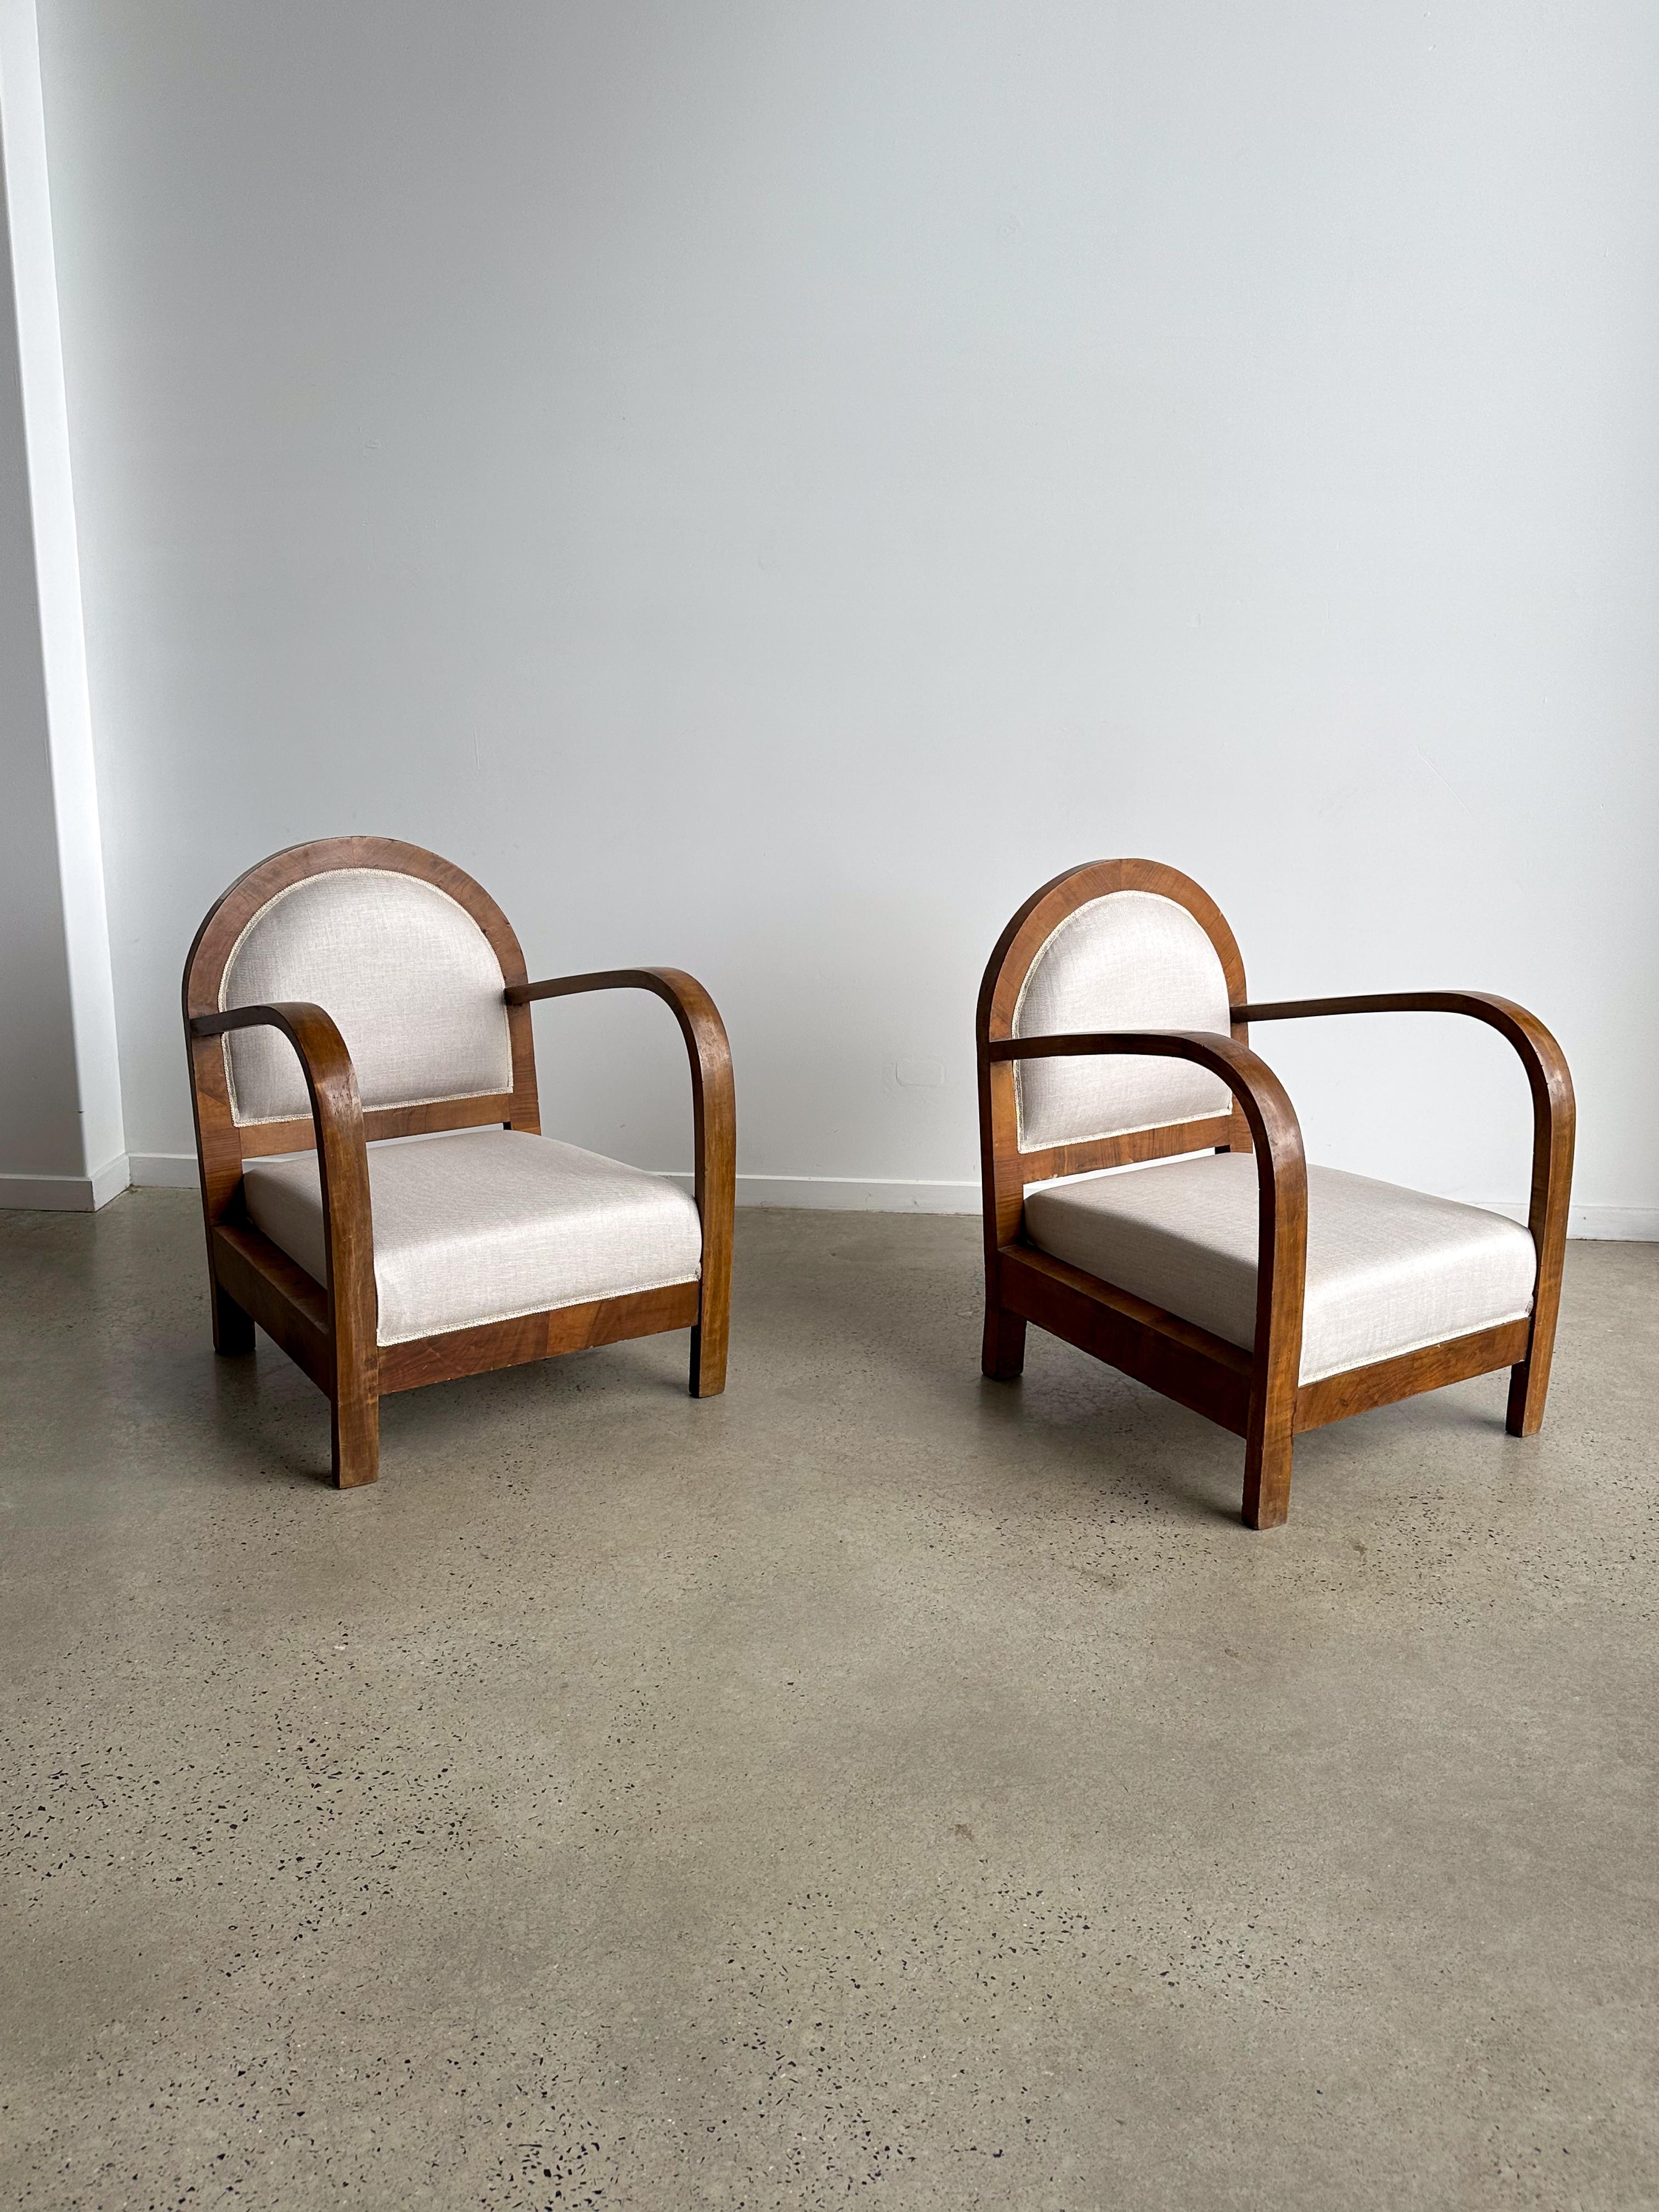 Italienische Art-Deco-Sessel aus Stoff und Mahagoni, in Italien professionell restauriert und neu gepolstert.

Art-Déco-Sessel sind stilvolle und unverwechselbare Sitzmöbel, die die Designprinzipien und die Ästhetik der Art-Déco-Bewegung